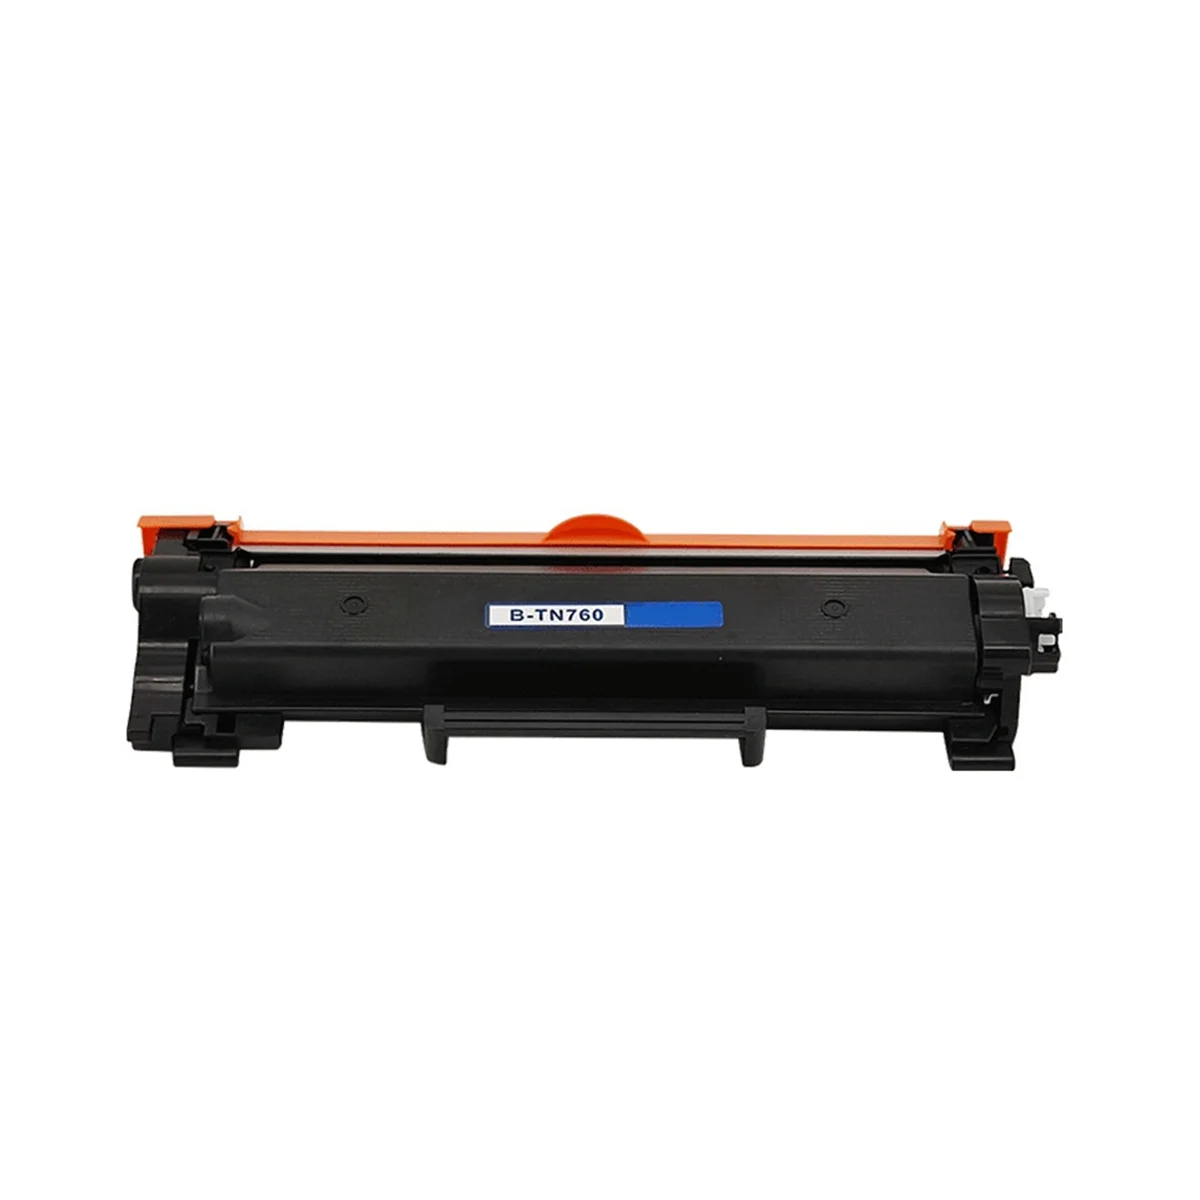 

Подходит для принтера Brother TN760, тонер-картридж, картридж принтера, запасные части, простота установки